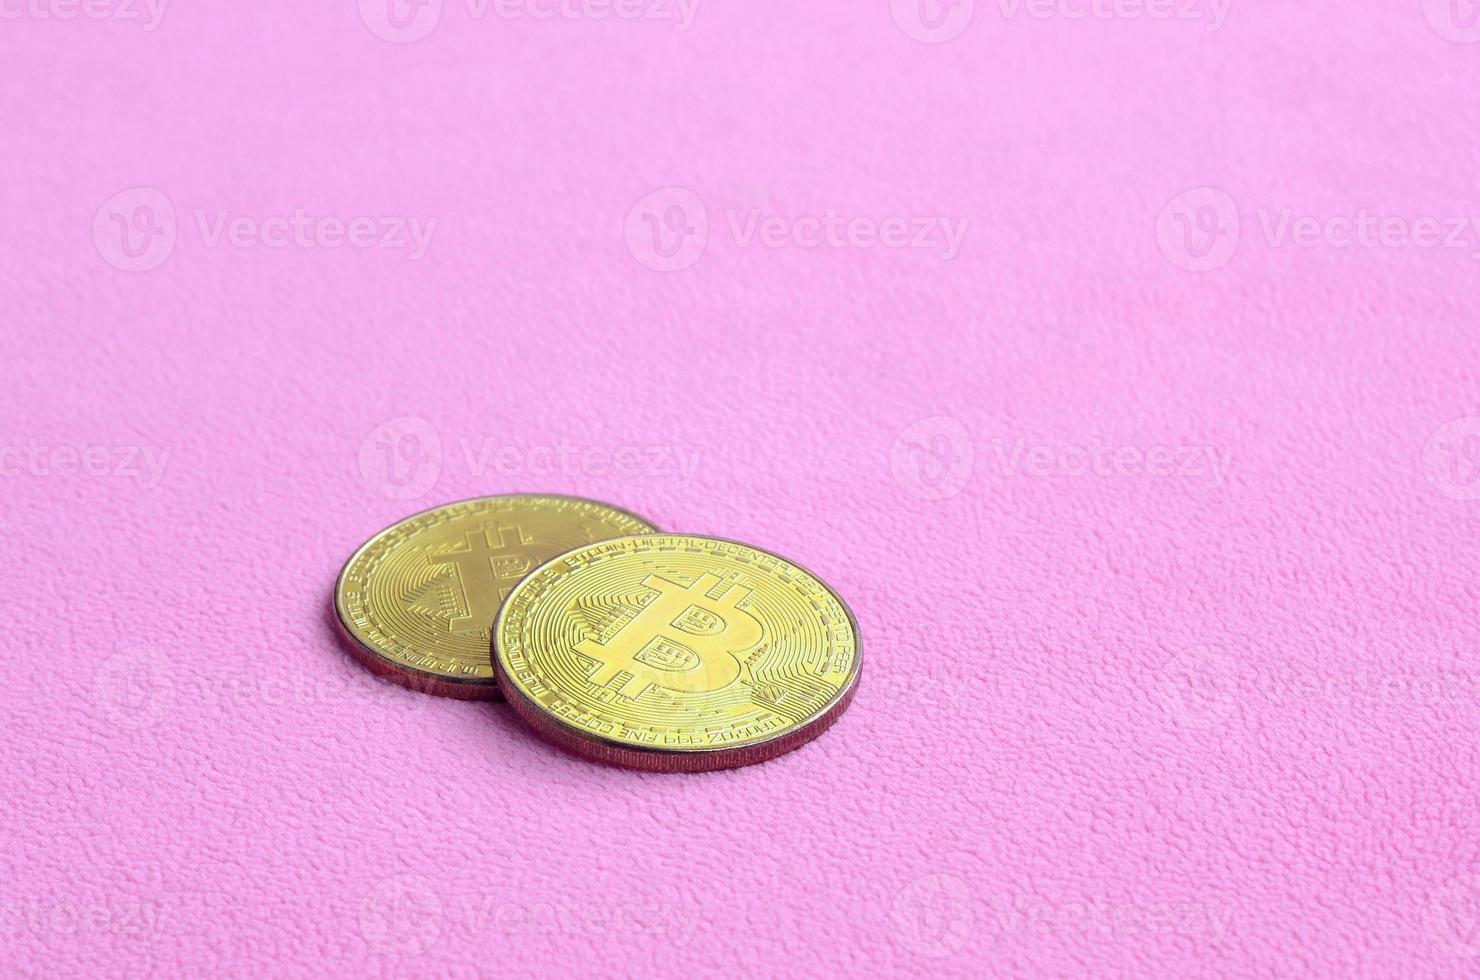 Due d'oro bitcoin bugie su un' coperta fatto di morbido e soffice leggero rosa vello tessuto. fisico visualizzazione di virtuale crypto moneta foto